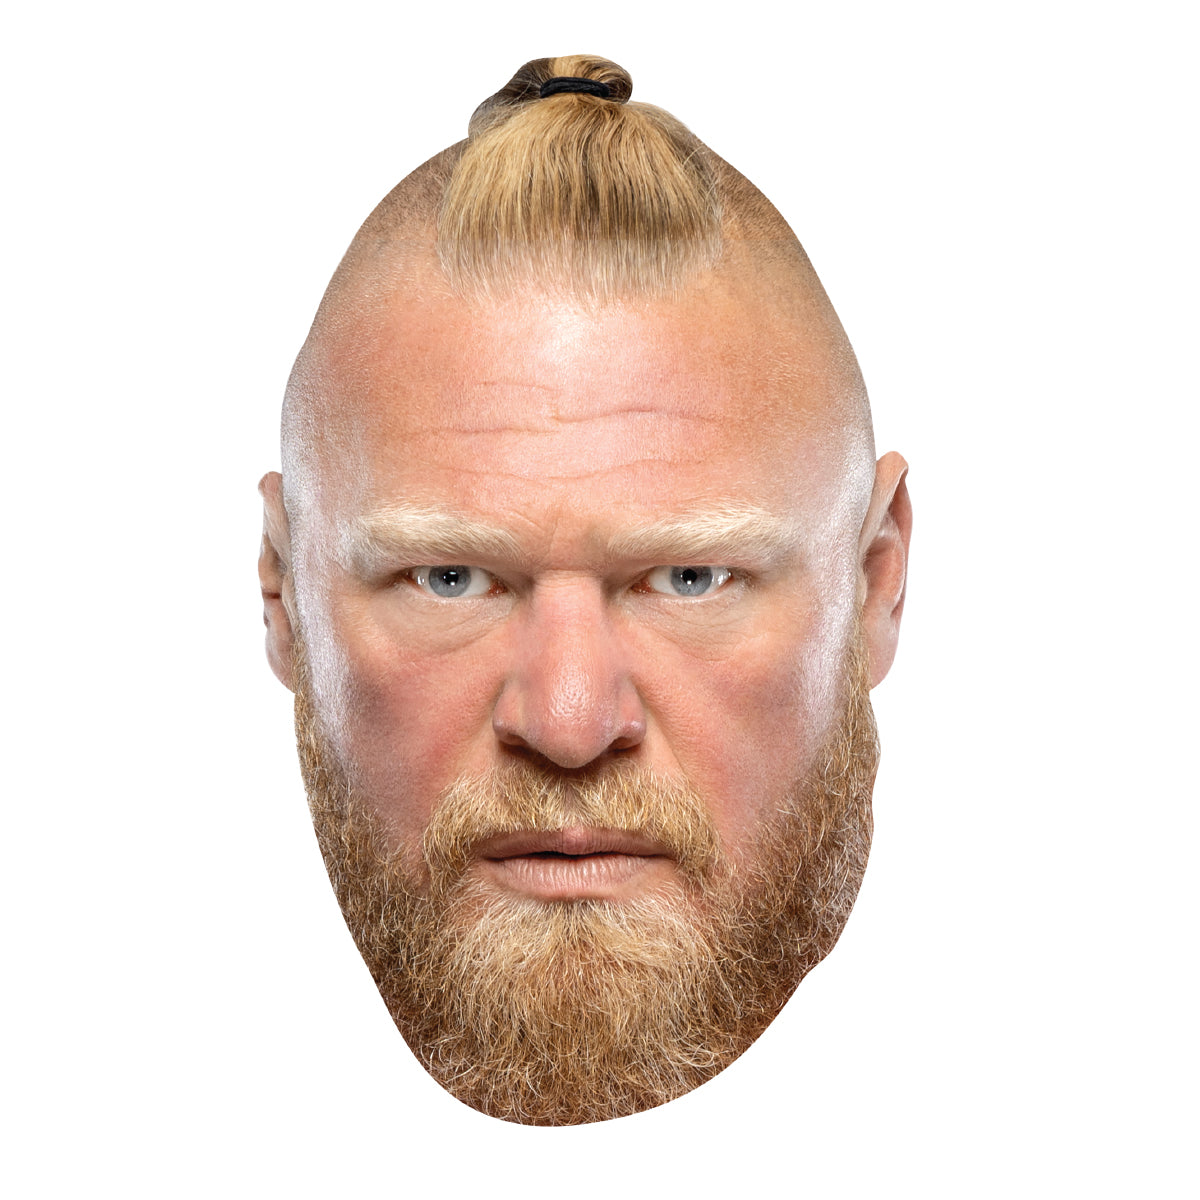 Brock Lesnar WWE, brocklesnar, HD phone wallpaper | Peakpx